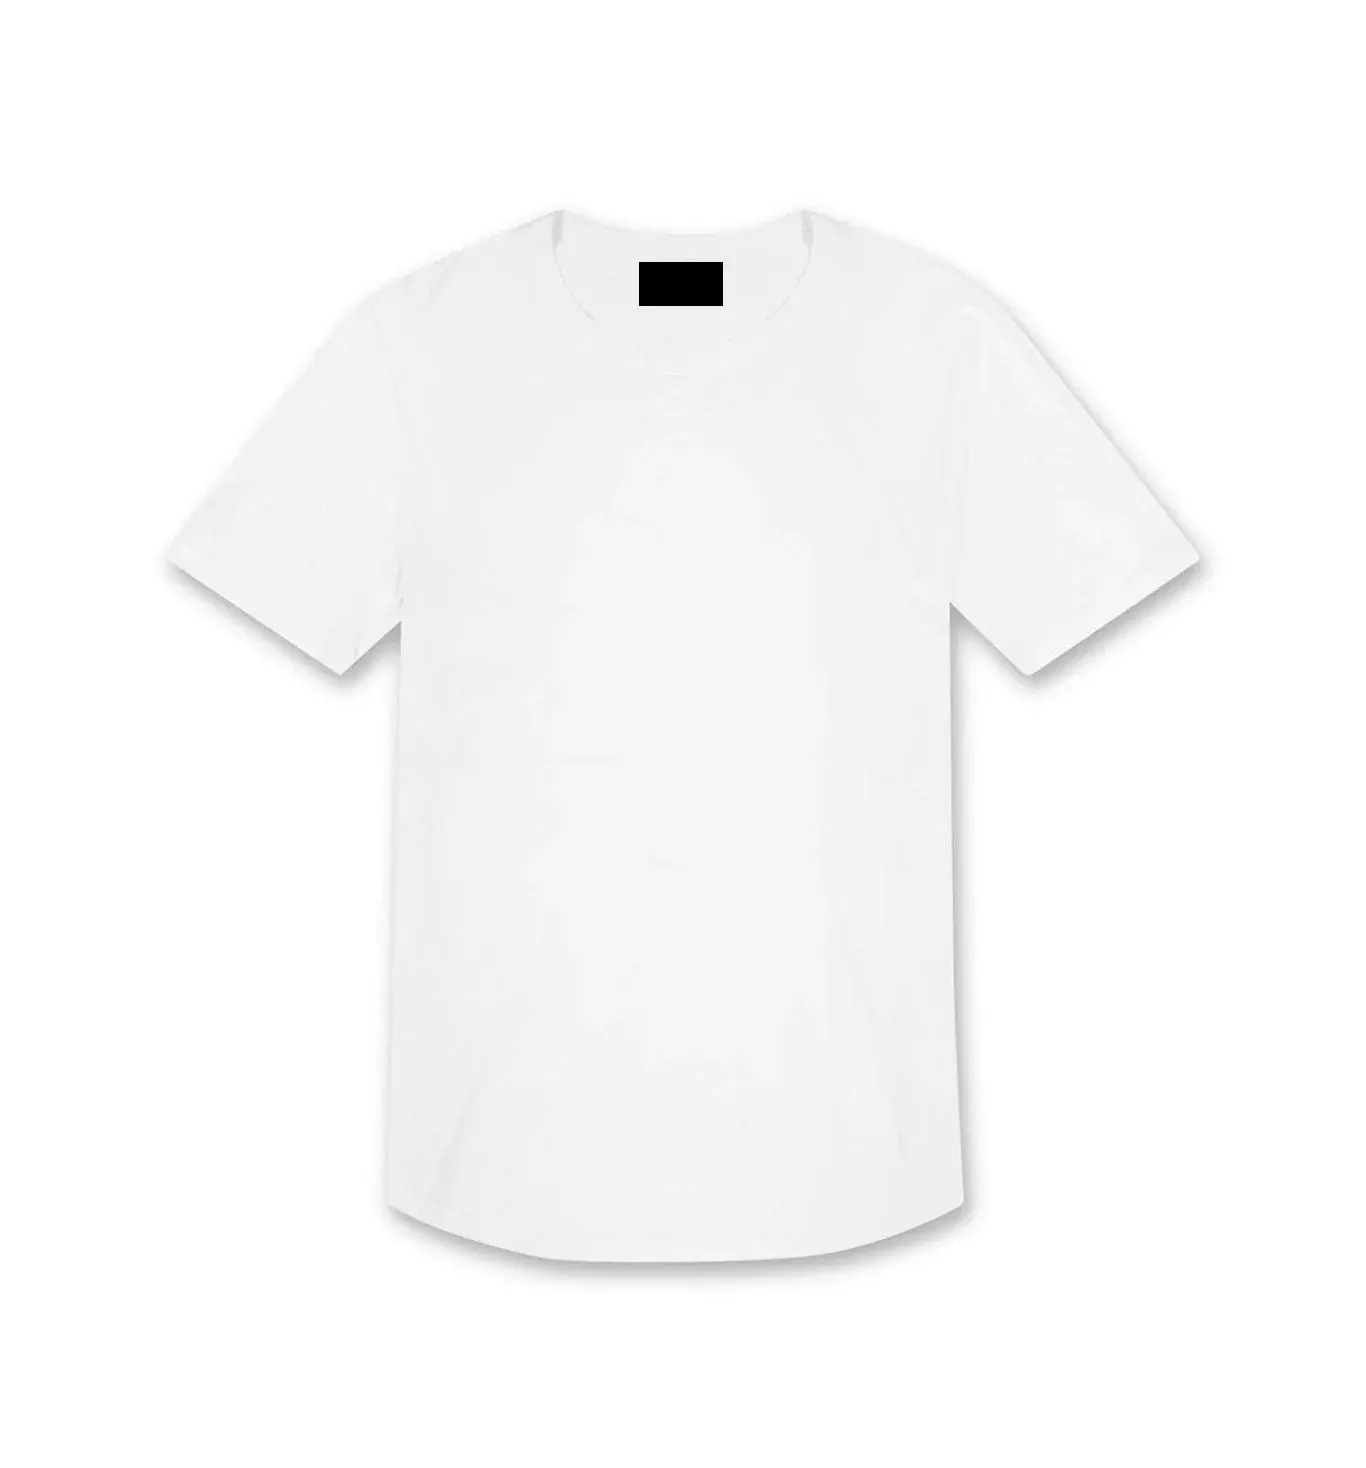 Camiseta de 100% algodão lisa branca personalizada, venda no atacado